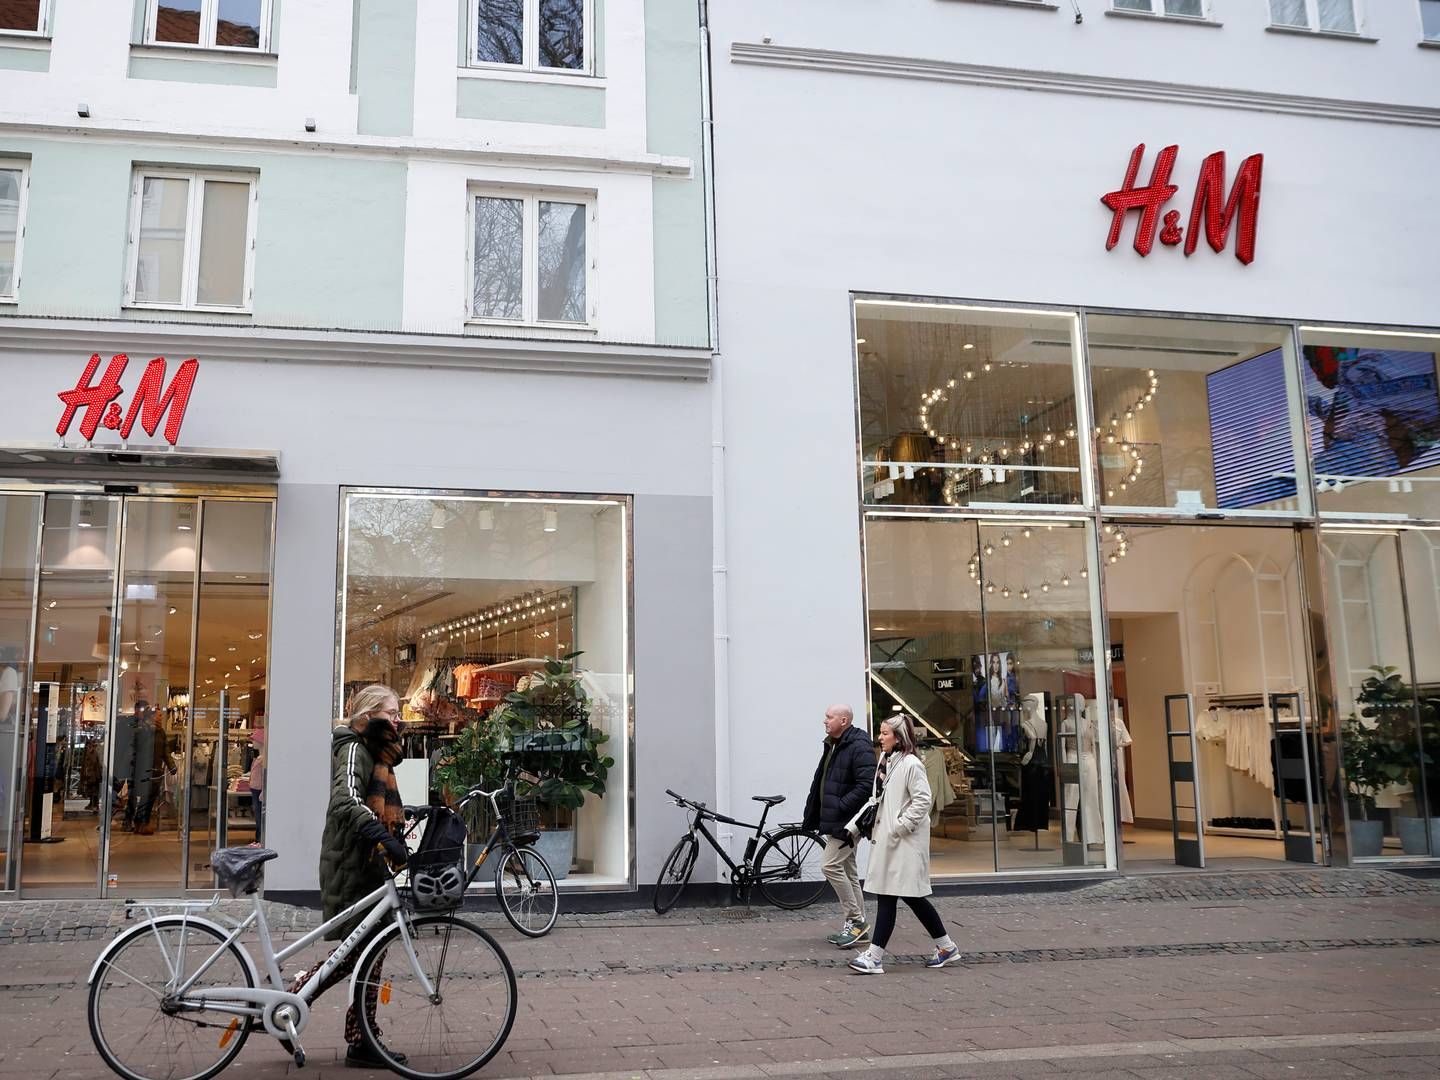 Omkring 10 af H&M's butikker ligger på Strøget i København. Koncernen driver kæderne H&M, Cos, &Other Stories, Arket, Monki, Weekday og H&M Home. | Foto: Jens Dresling